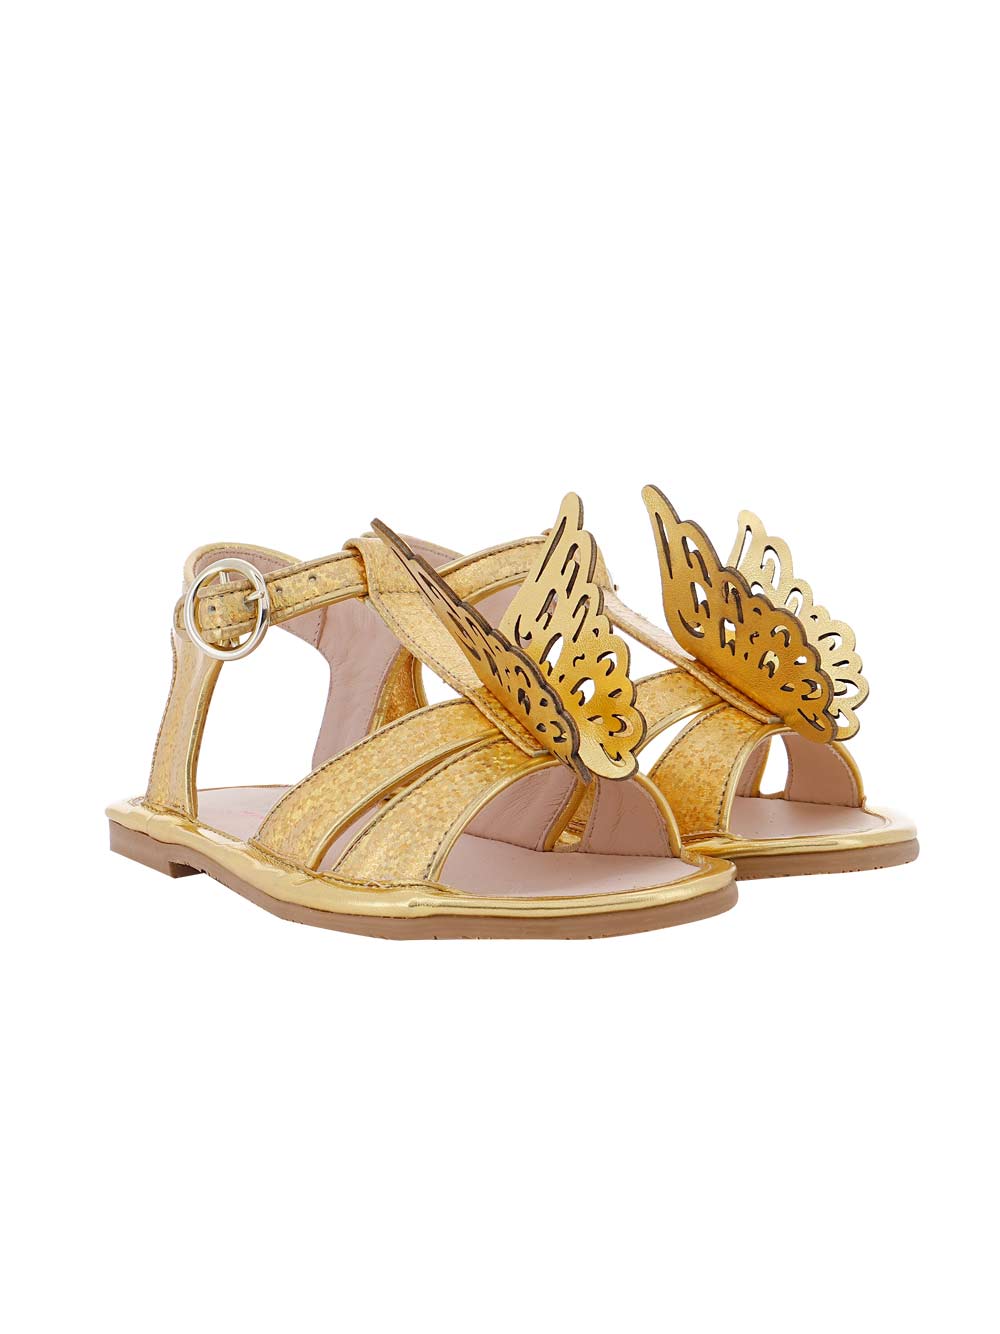 Celeste Gold Sandals